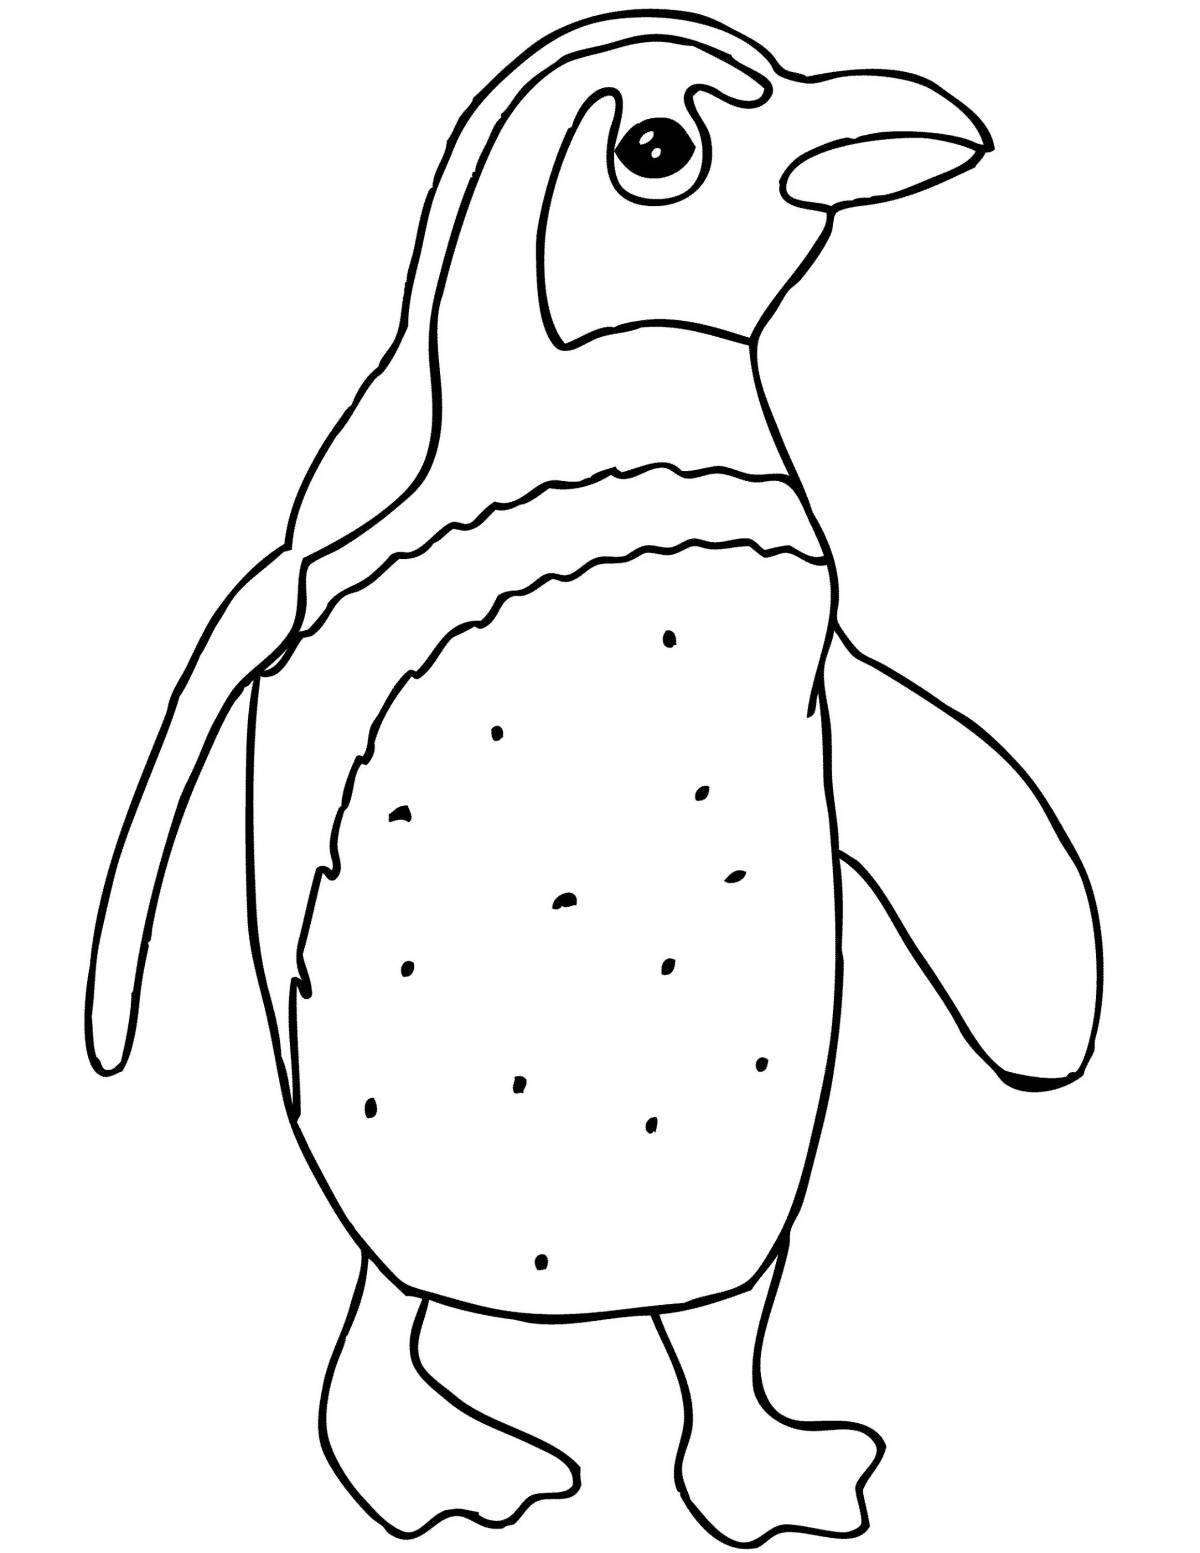 Фото Причудливая антистрессовая раскраска пингвинов